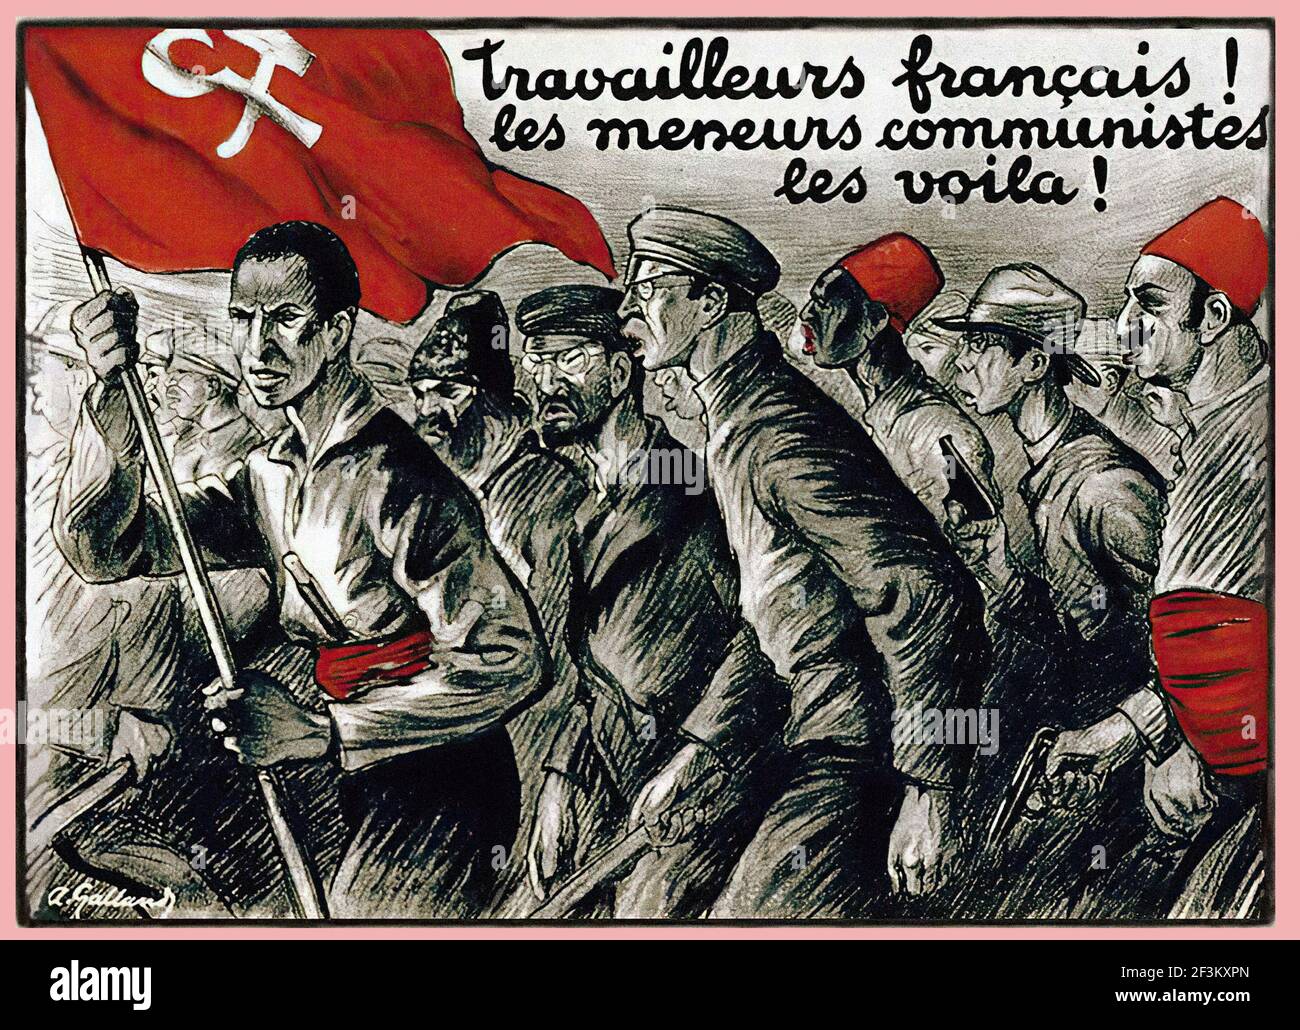 Affiche de propagande anti-communiste française. Les travailleurs de France! Voyez à quoi ressemblent vraiment les dirigeants communistes ! France, 1927 Banque D'Images